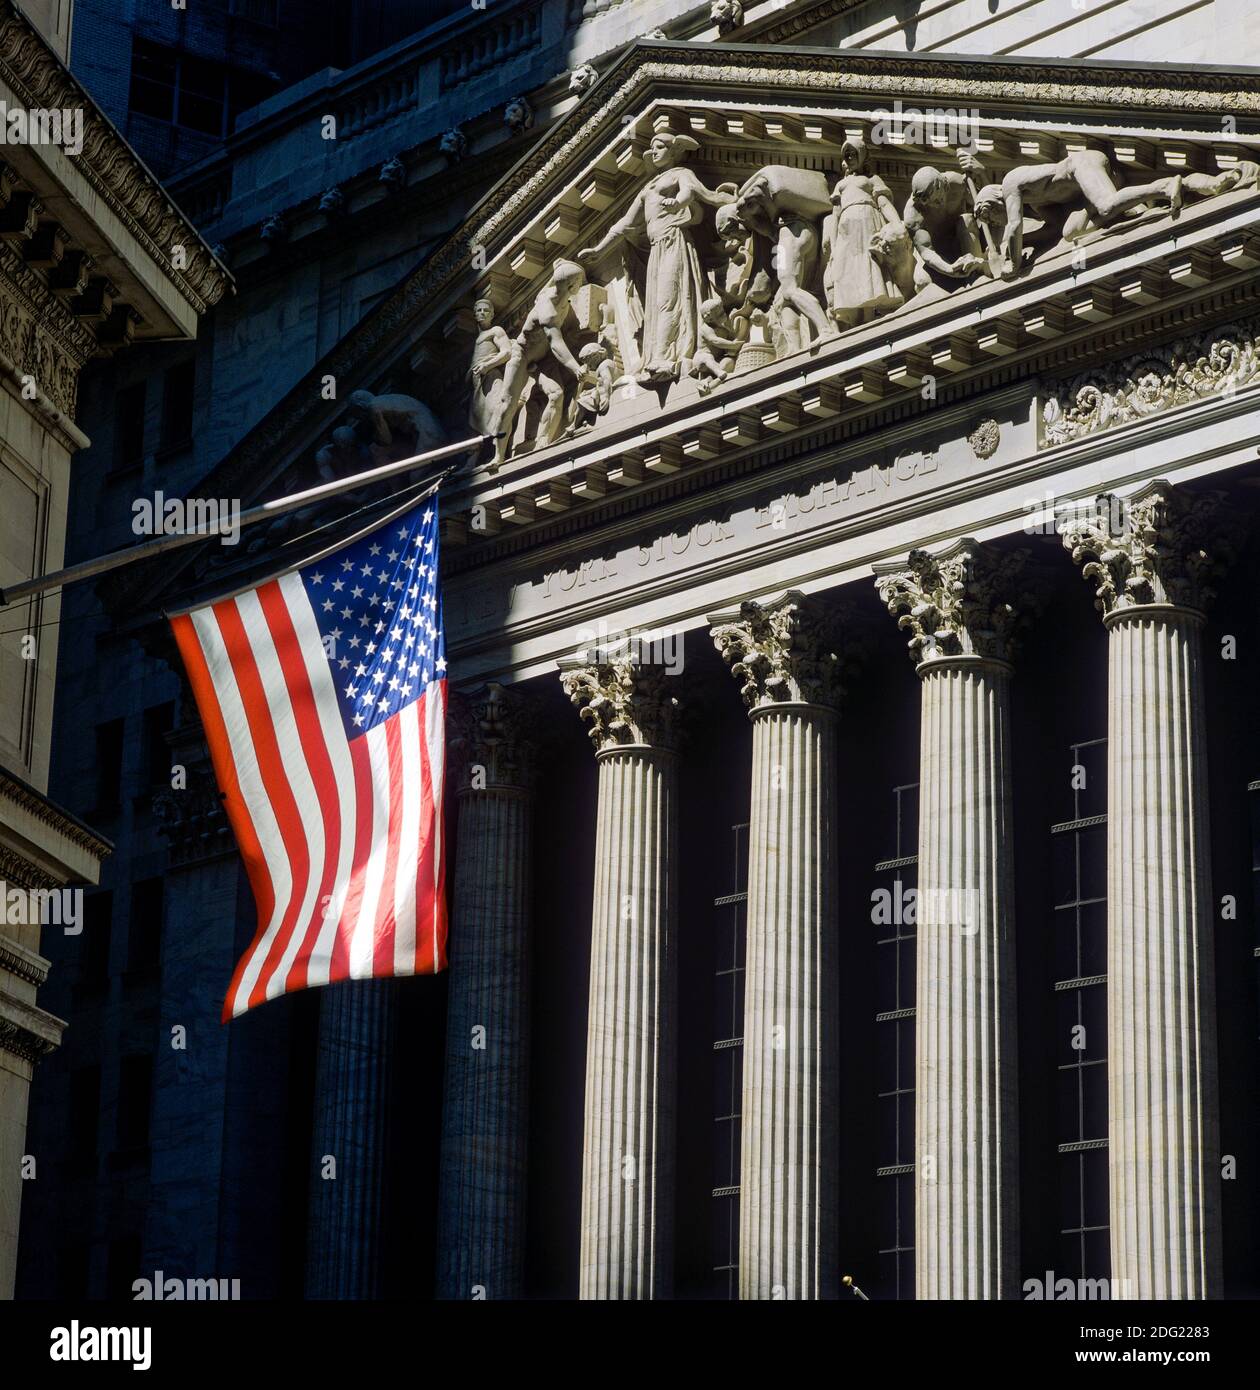 New York 1985, NYSE, facciata anteriore dell'edificio della Borsa, Broad Street, bandiera americana, quartiere finanziario, Lower Manhattan, New York City, NY, NYC, USA, Foto Stock